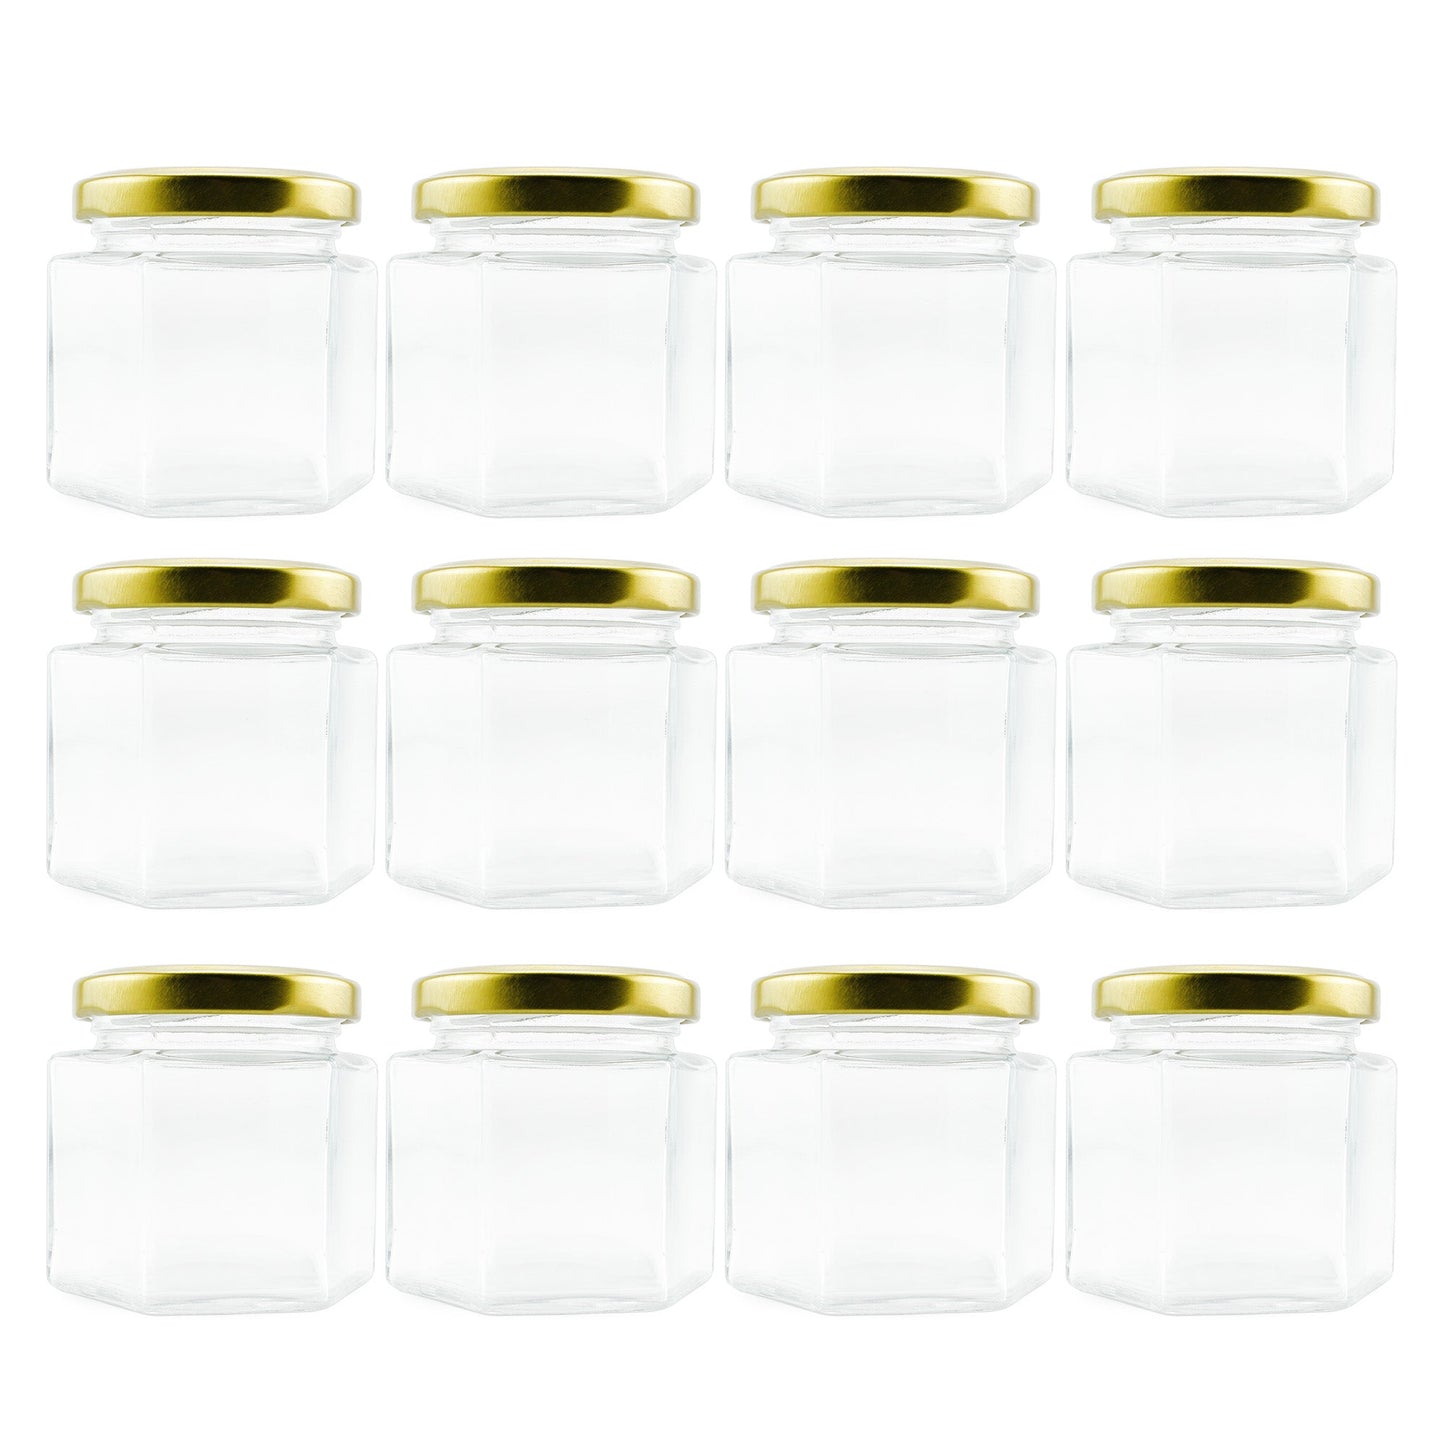 4oz Hexagon Glass Jars (12-Pack) - sh814cb0hex4oz